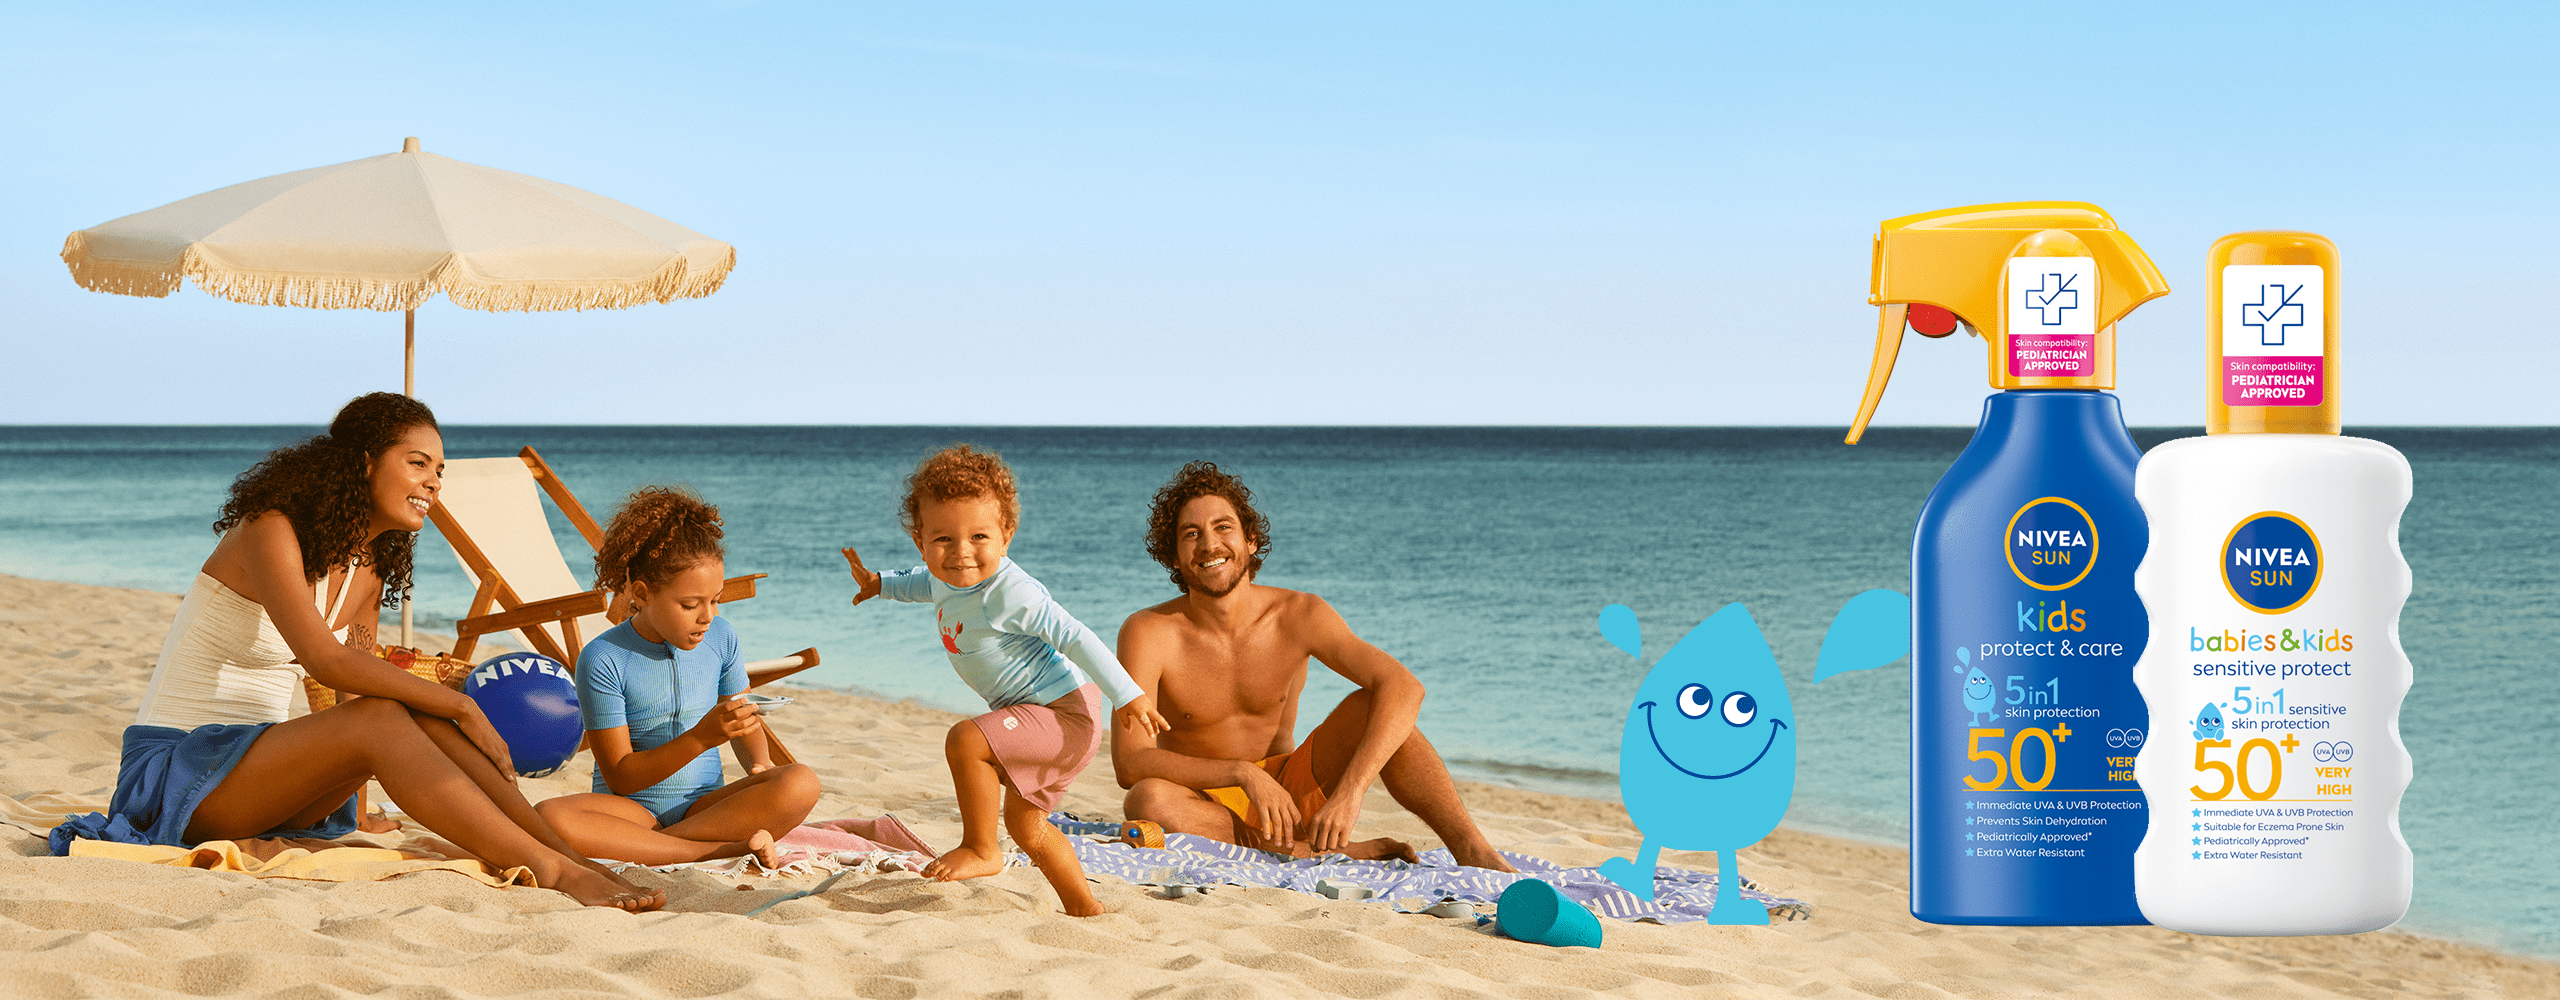 Родители с бебе и дете, играещи на плажа със слънцезащитен крем NIVEA